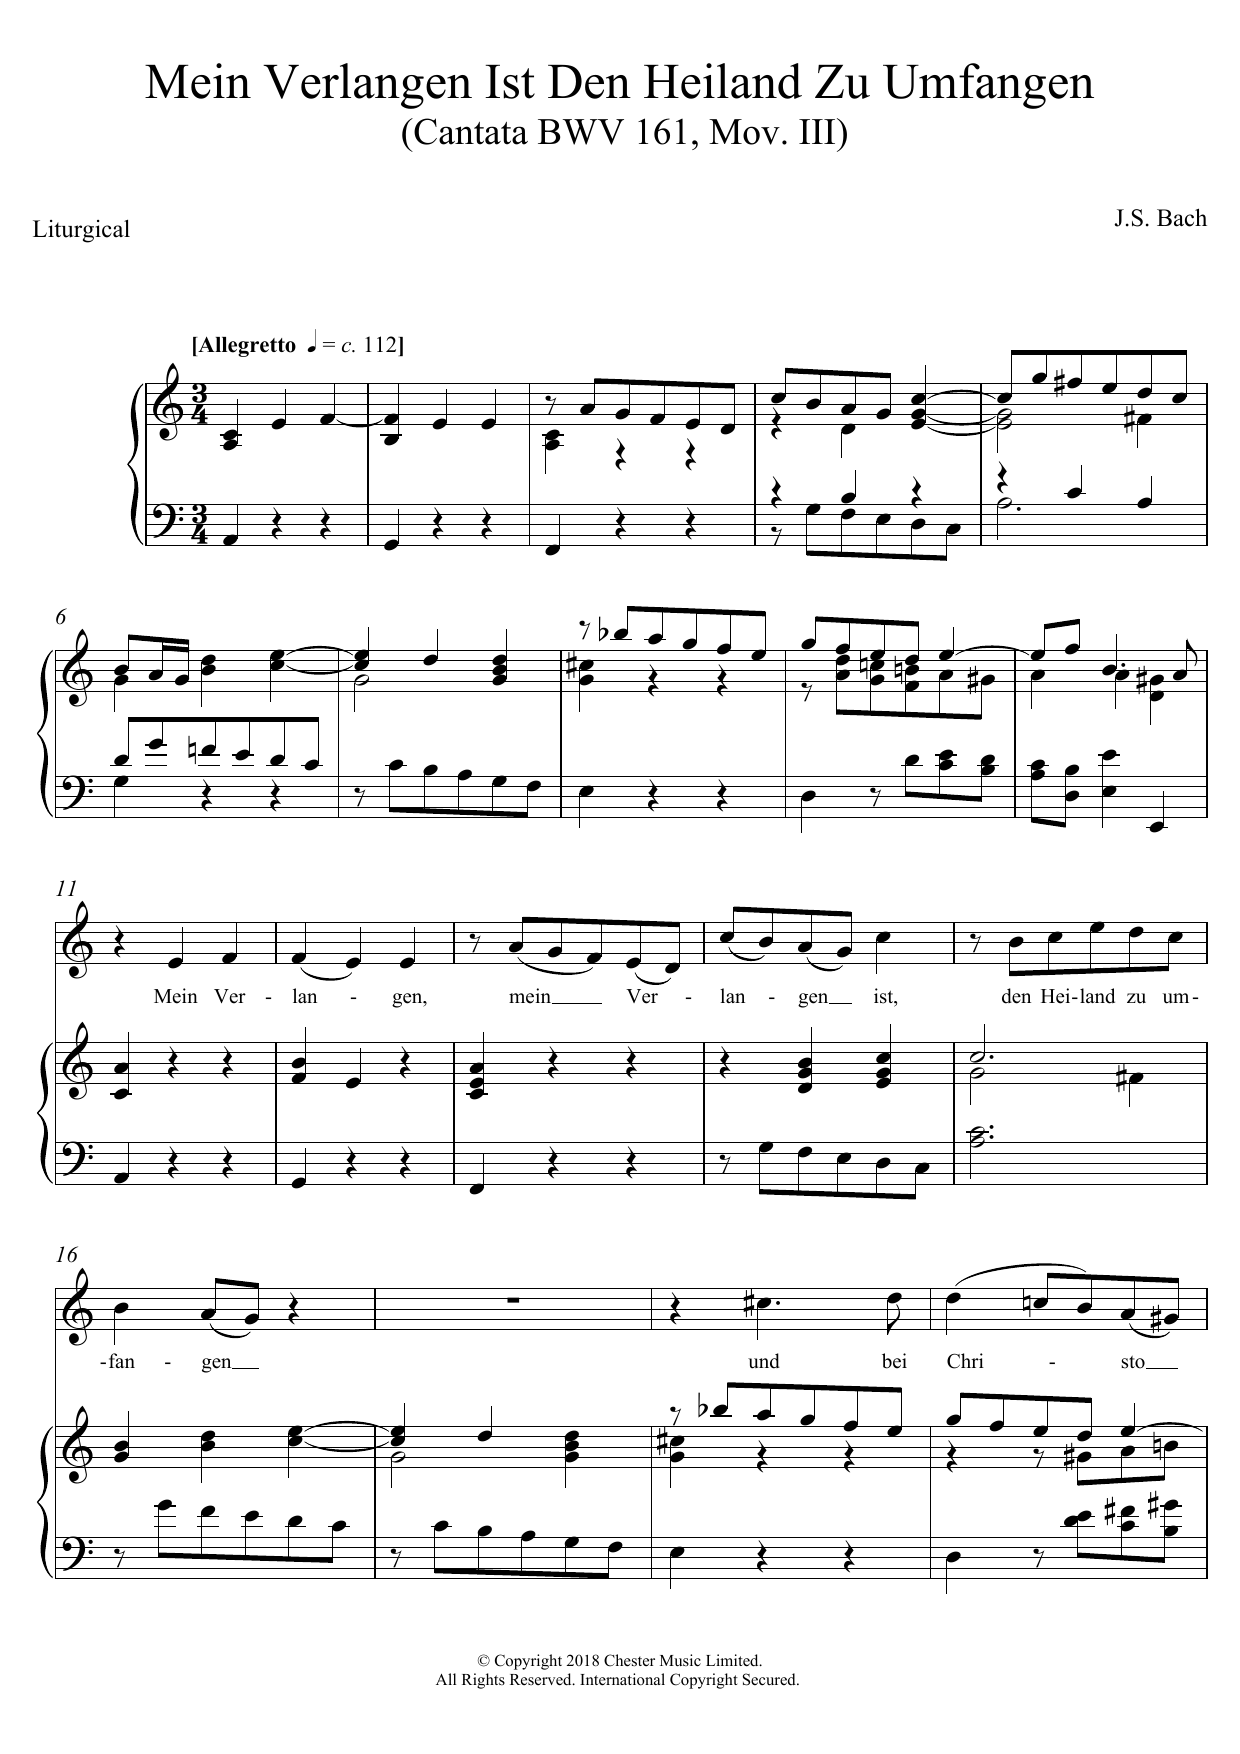 Johann Sebastian Bach Mein Verlangen Ist Den Heiland Zu Umfangen (Cantata BWV 161, Mov. III) Sheet Music Notes & Chords for Piano, Vocal & Guitar - Download or Print PDF